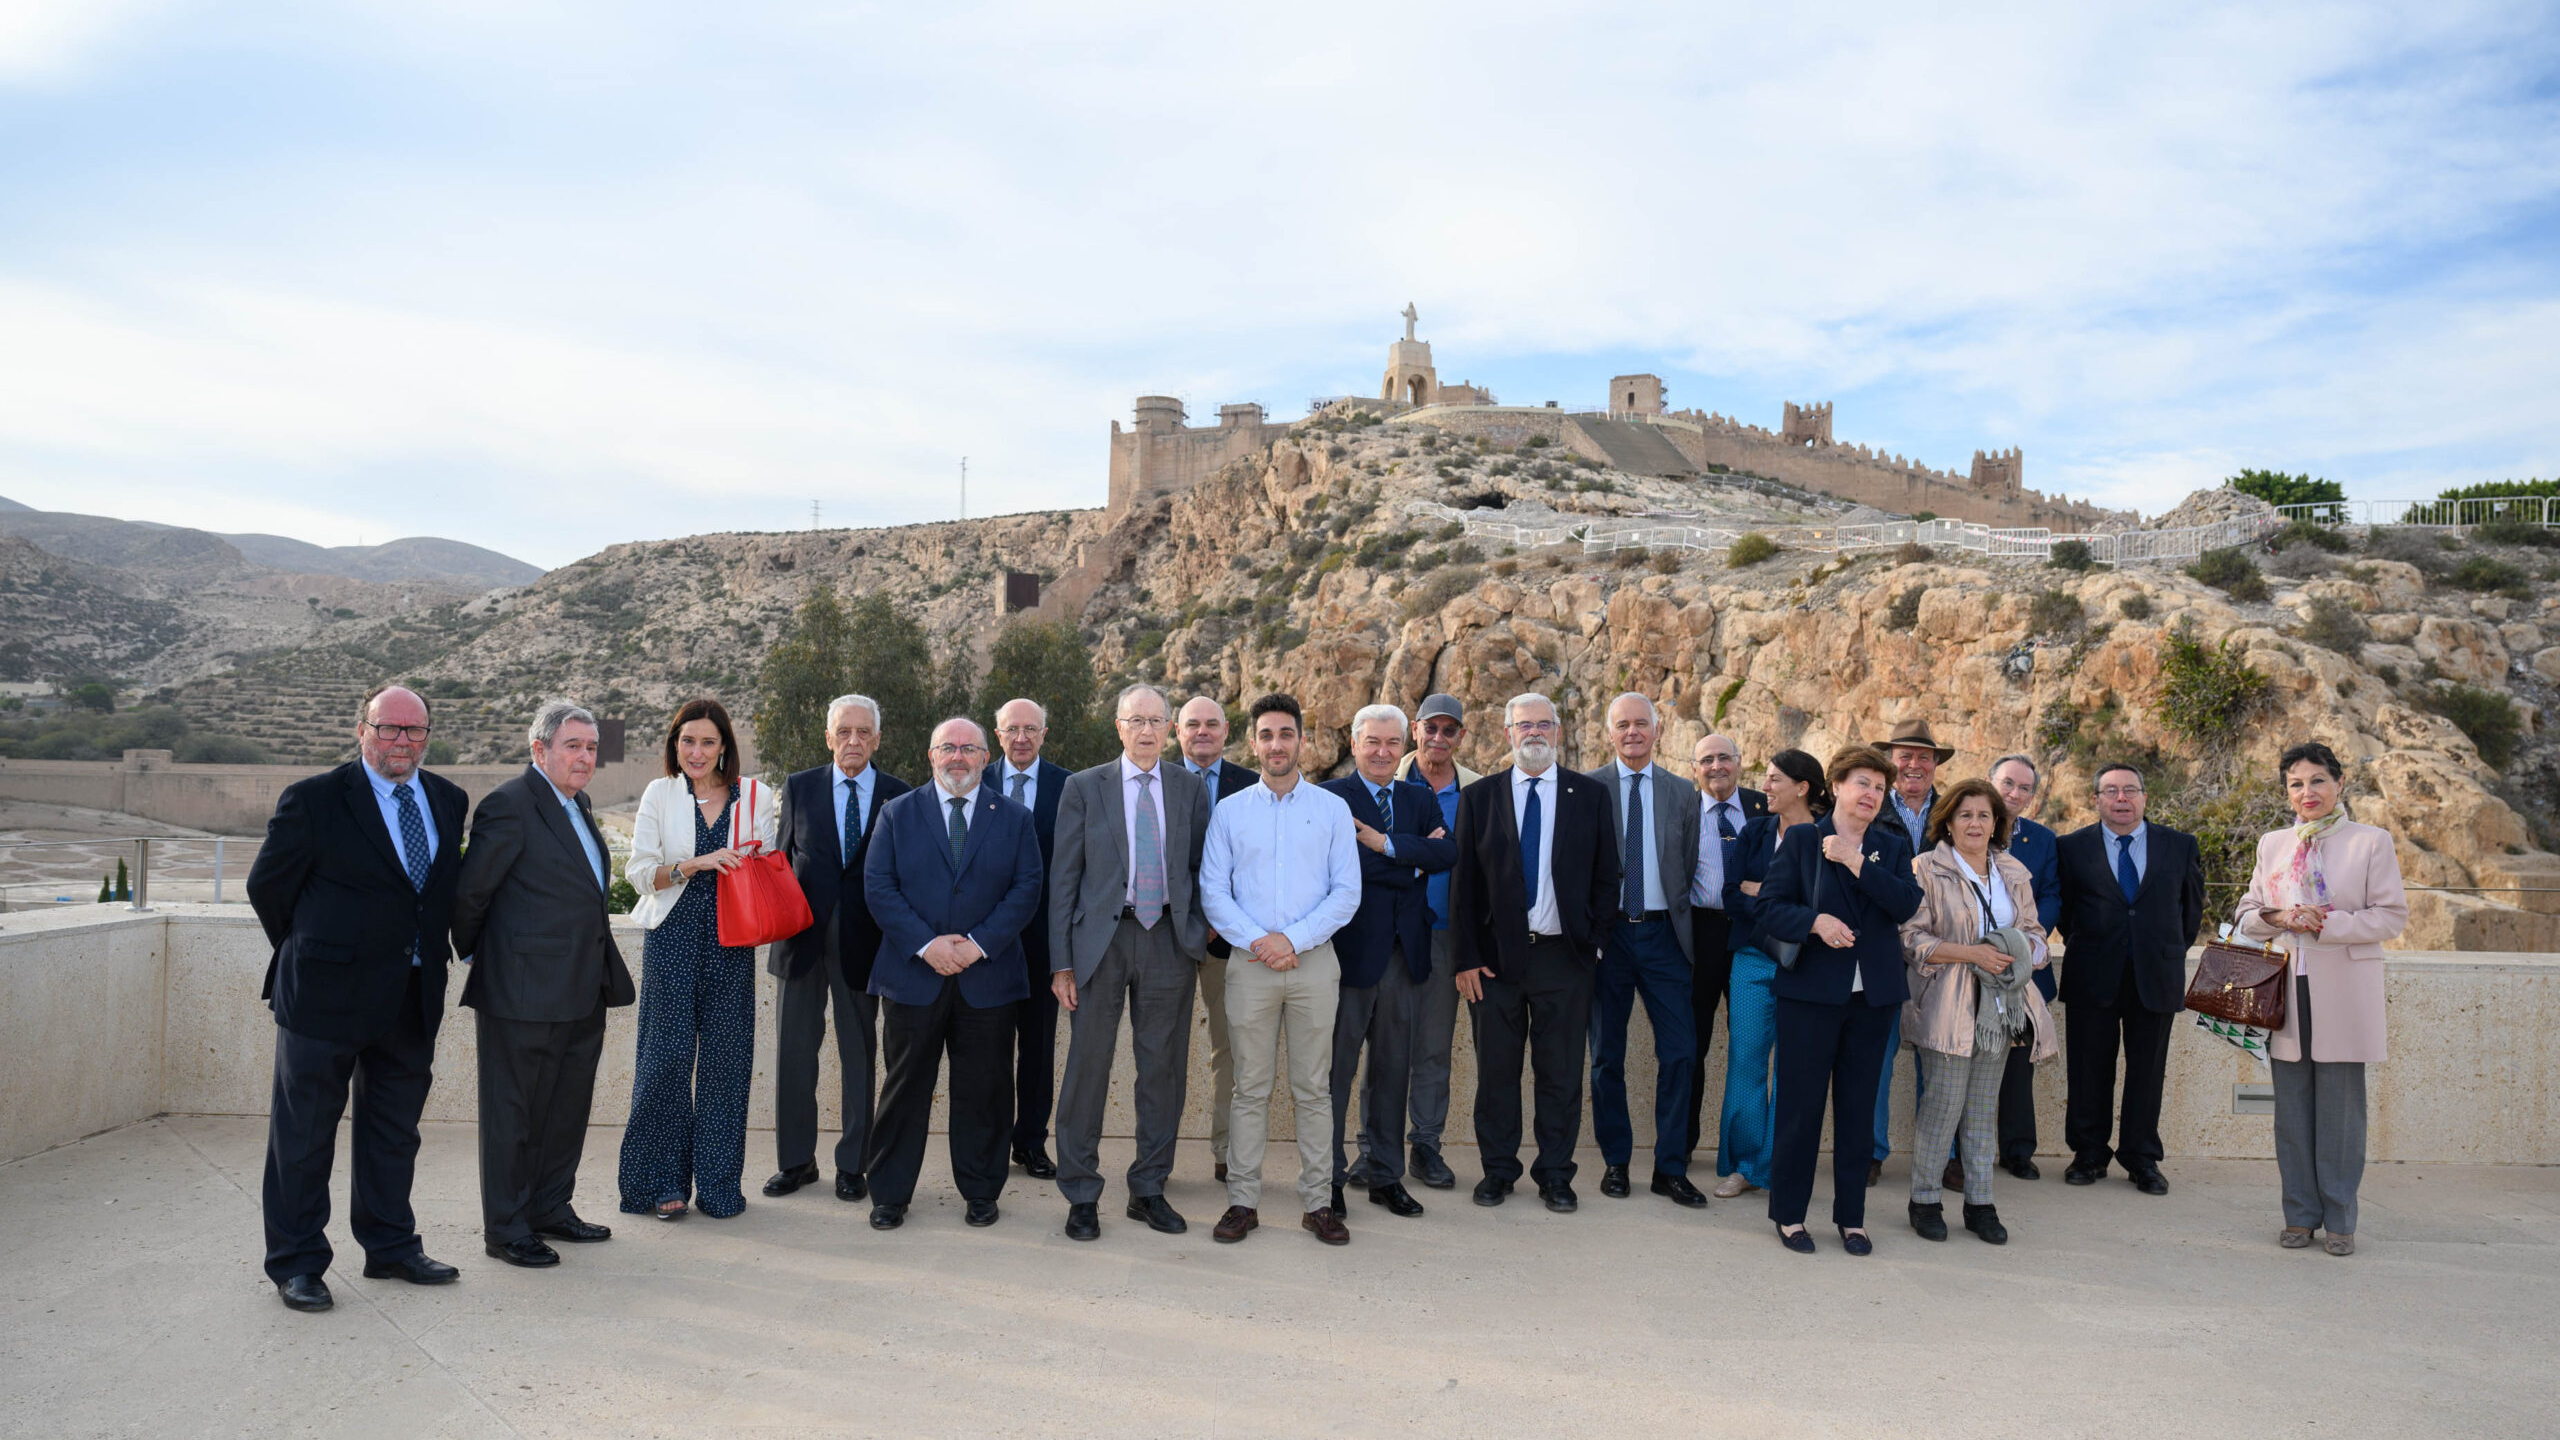 exposicion instituto de academias009 scaled uai - Turismo Almería